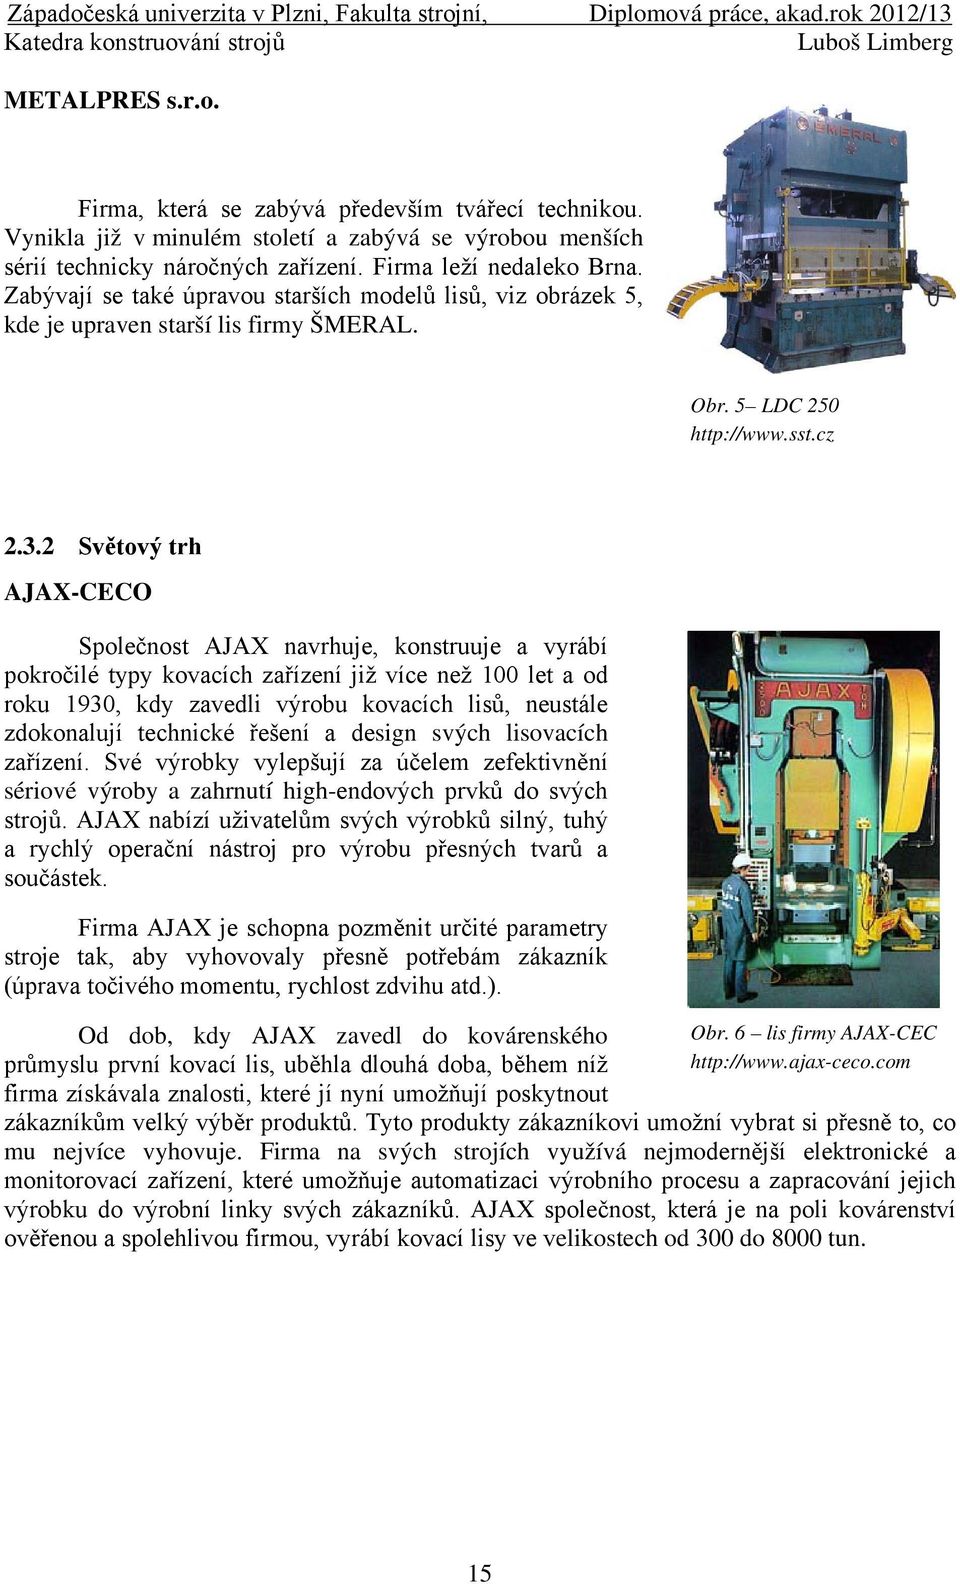 2 Světový trh AJAX-CECO Společnost AJAX navrhuje, konstruuje a vyrábí pokročilé typy kovacích zařízení již více než 100 let a od roku 1930, kdy zavedli výrobu kovacích lisů, neustále zdokonalují